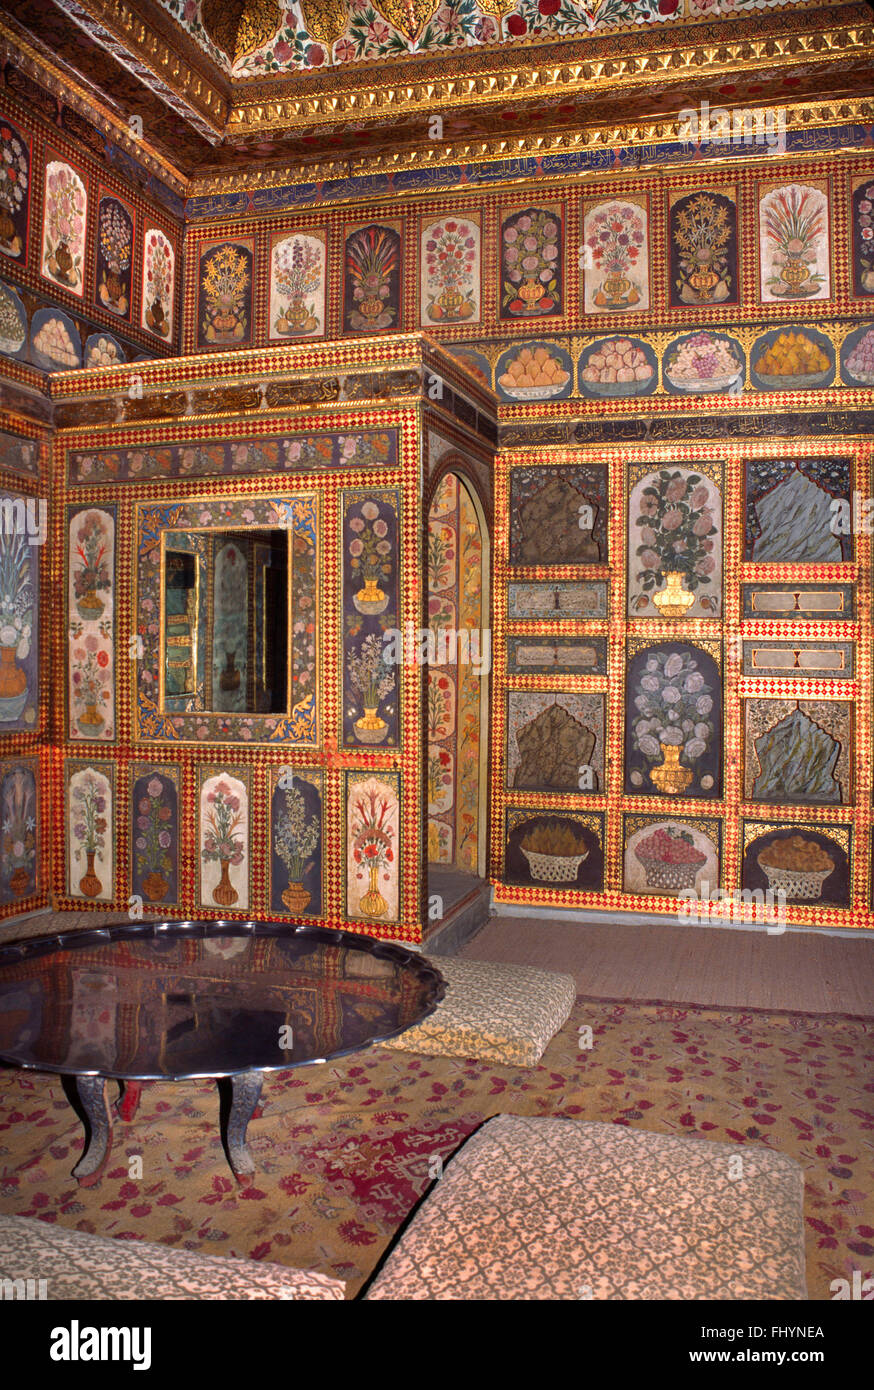 Uno dei bellissimi dipinti, piastrellati e decorate camere salotto dell'Harem - Il Palazzo di Topkapi (Impero ottomano), Istanbul Foto Stock